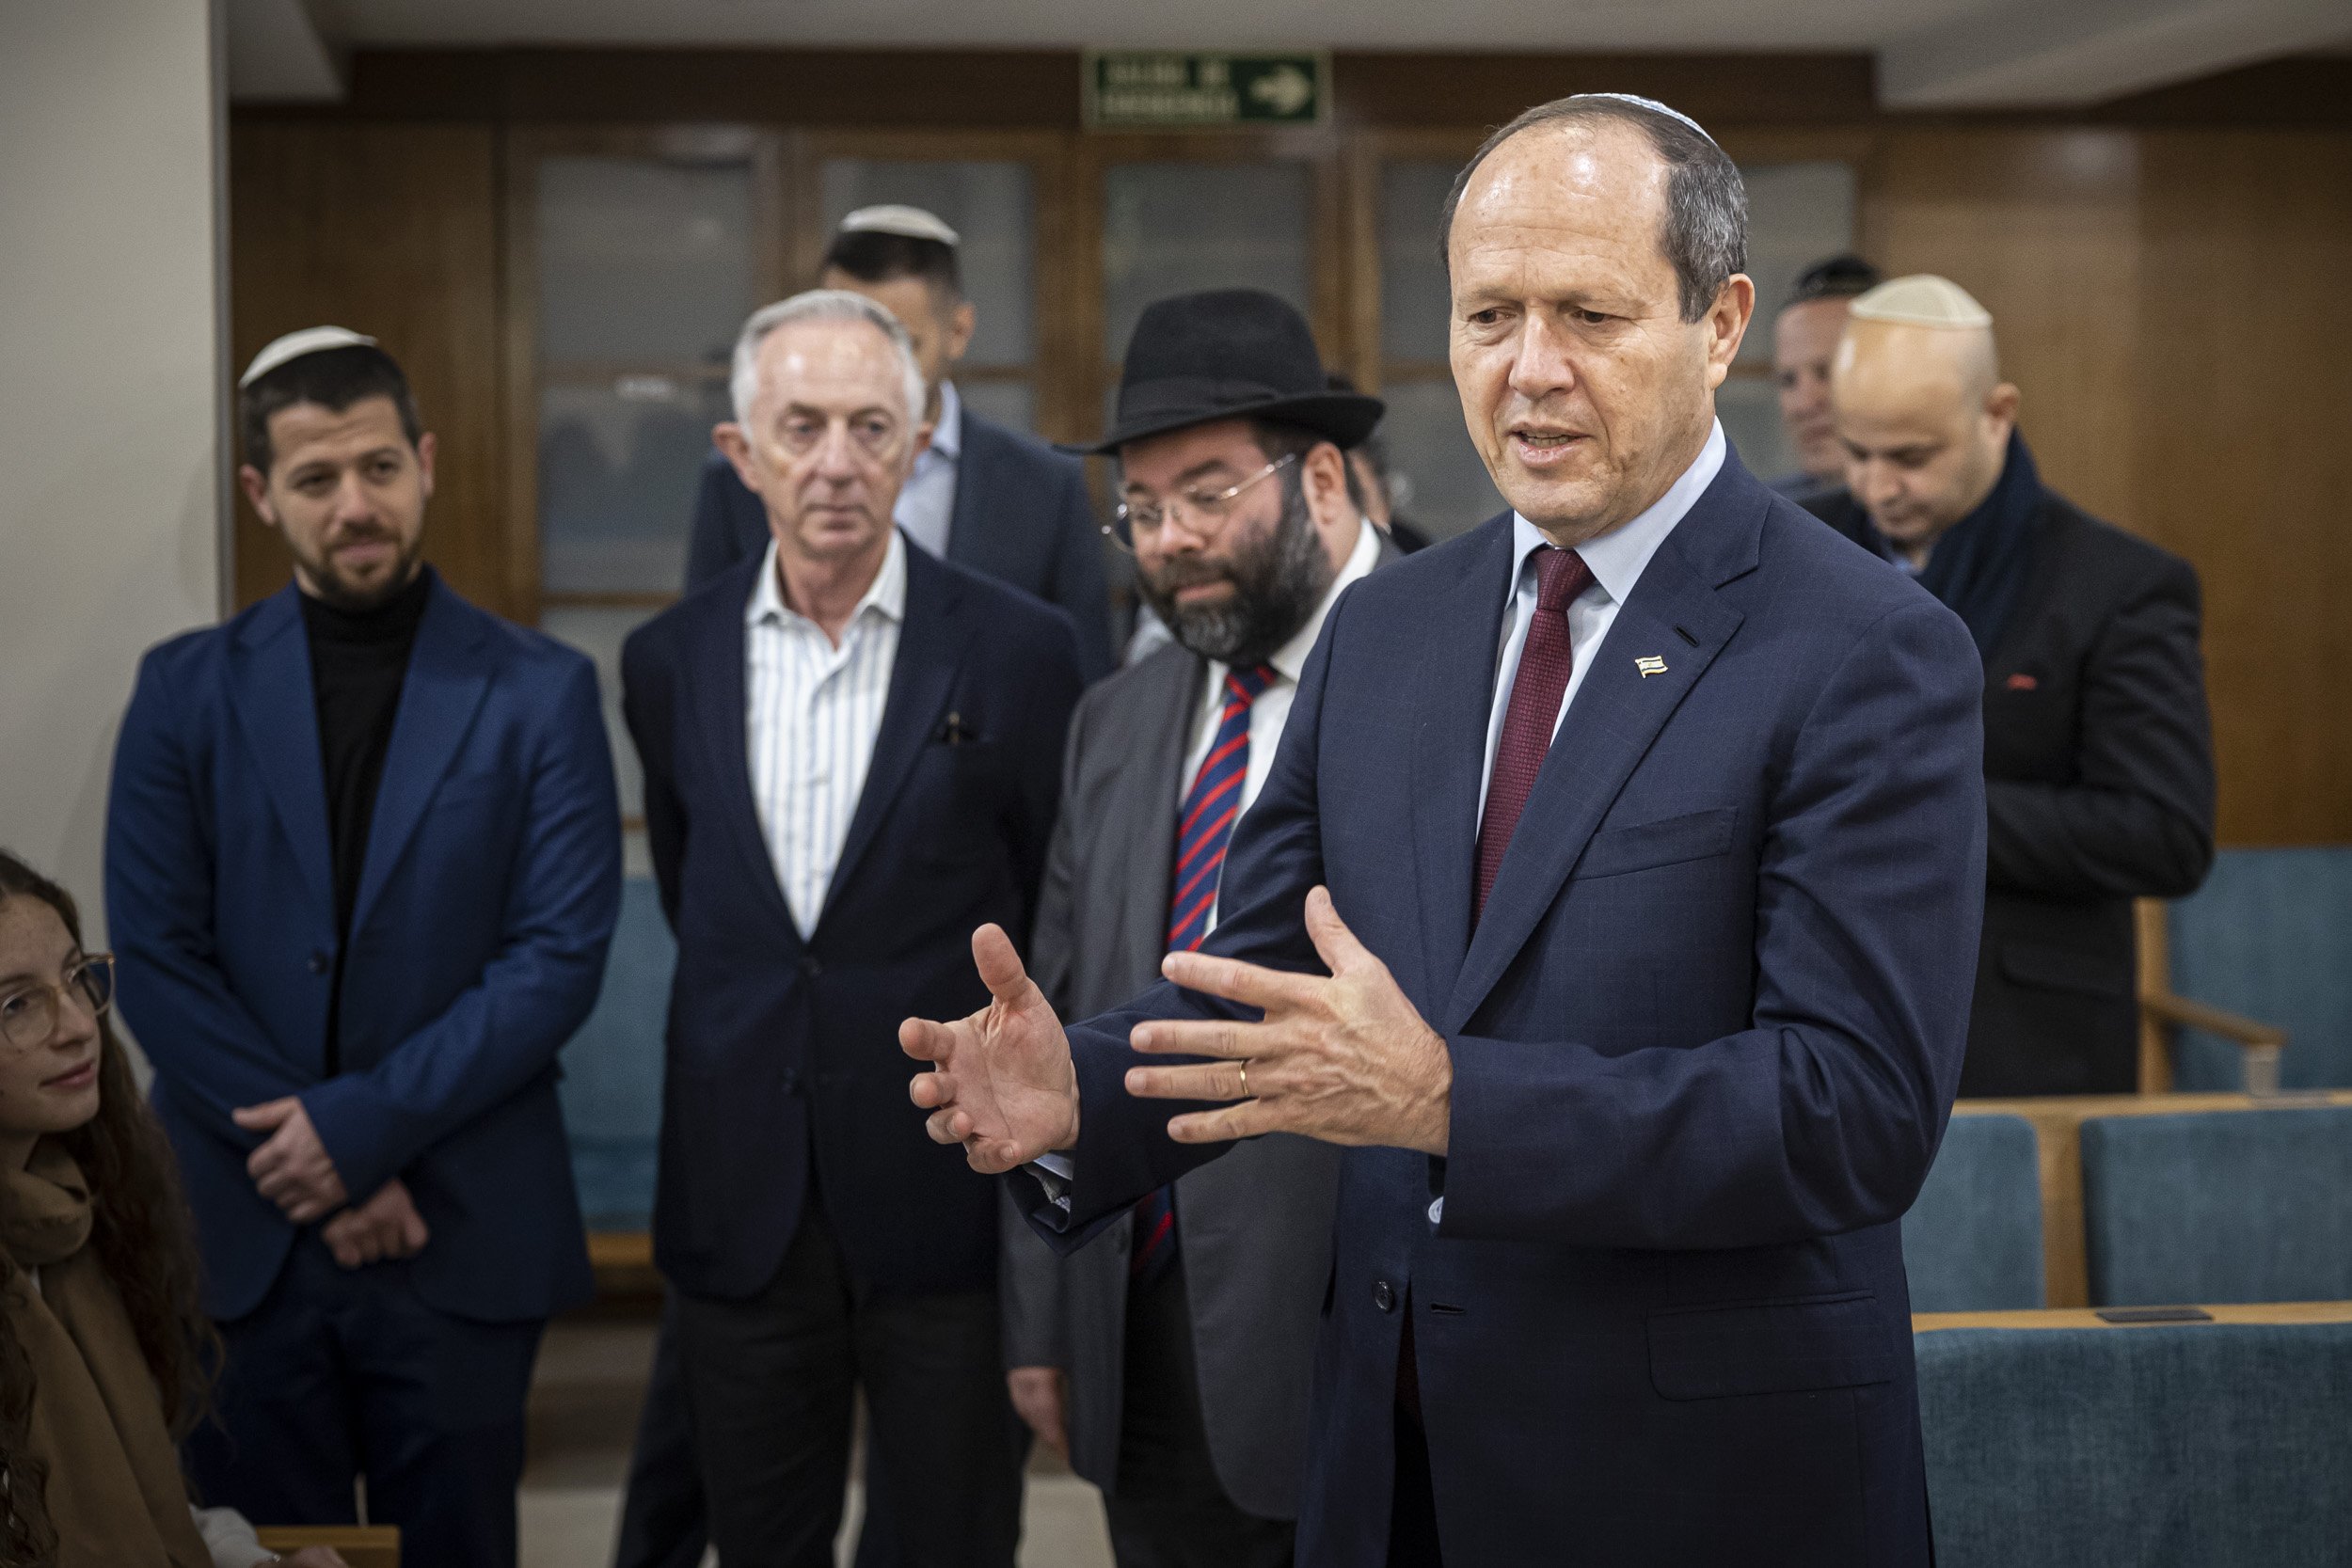 El ministro de Economía israelí visita la comunidad judía de Barcelona: "Las relaciones se mantienen"